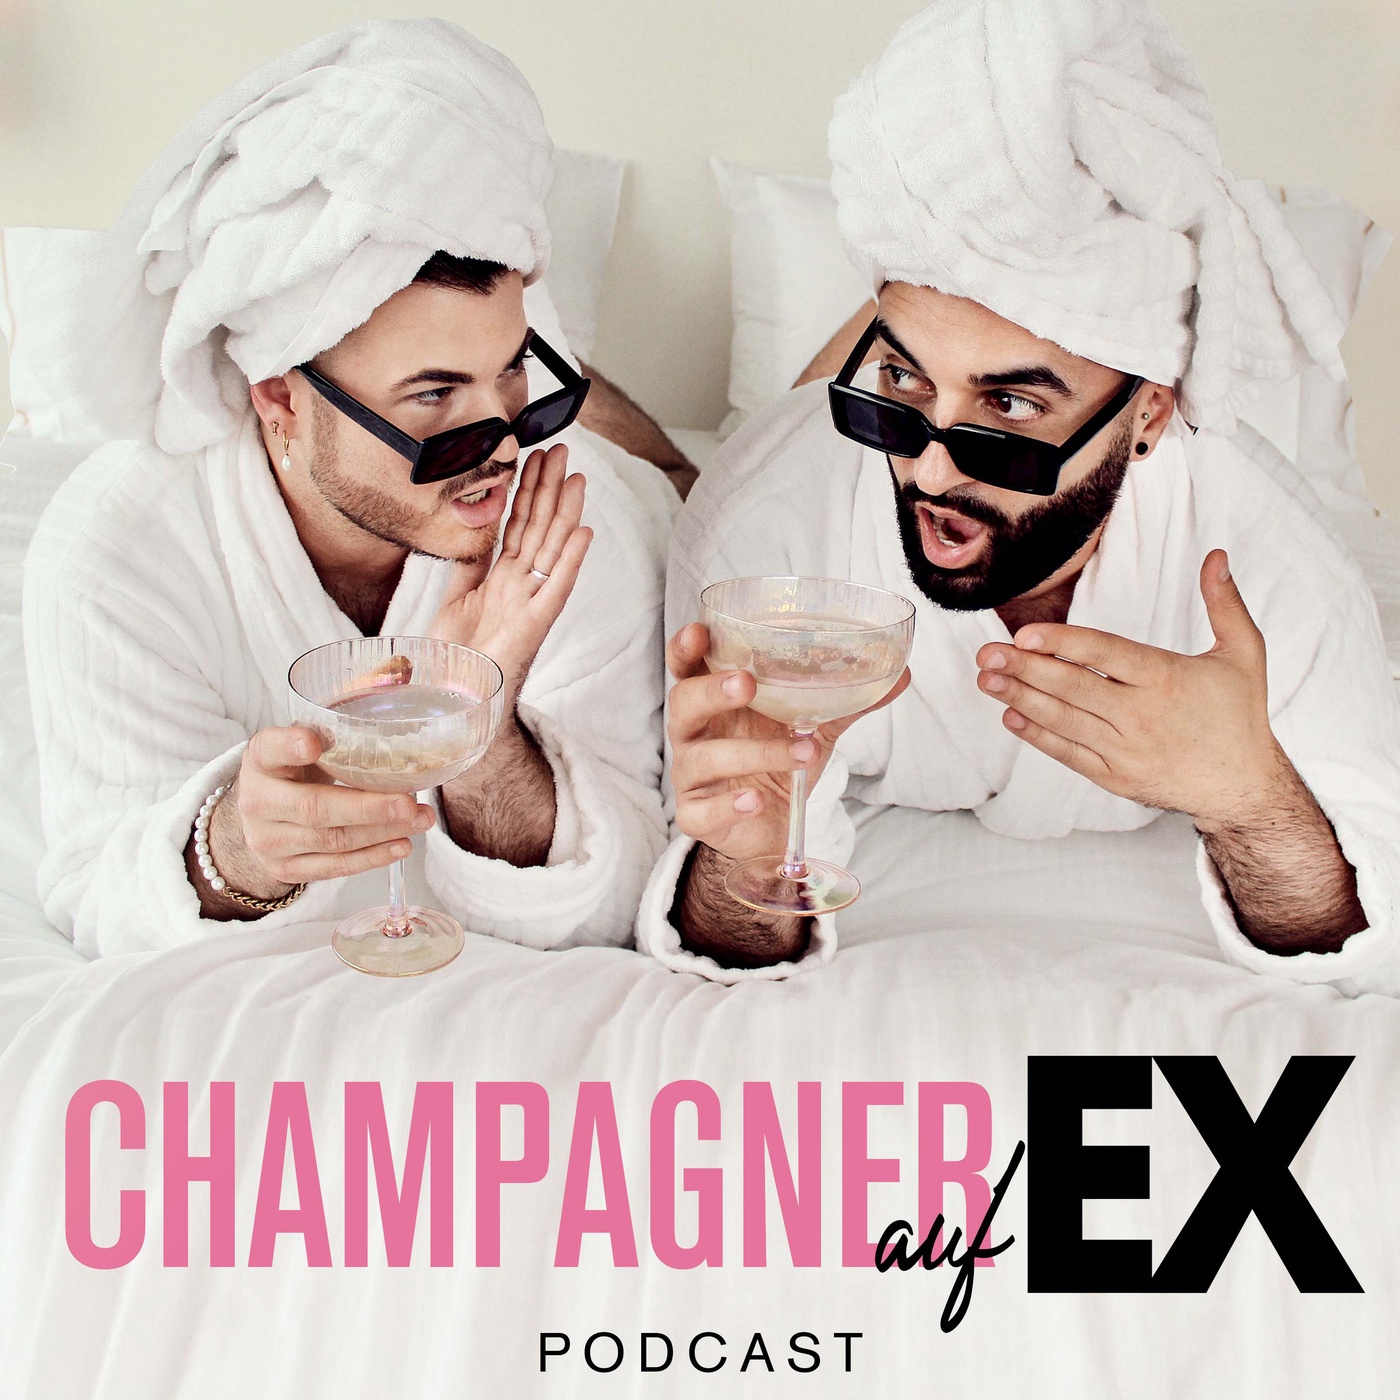 Champagner auf EX